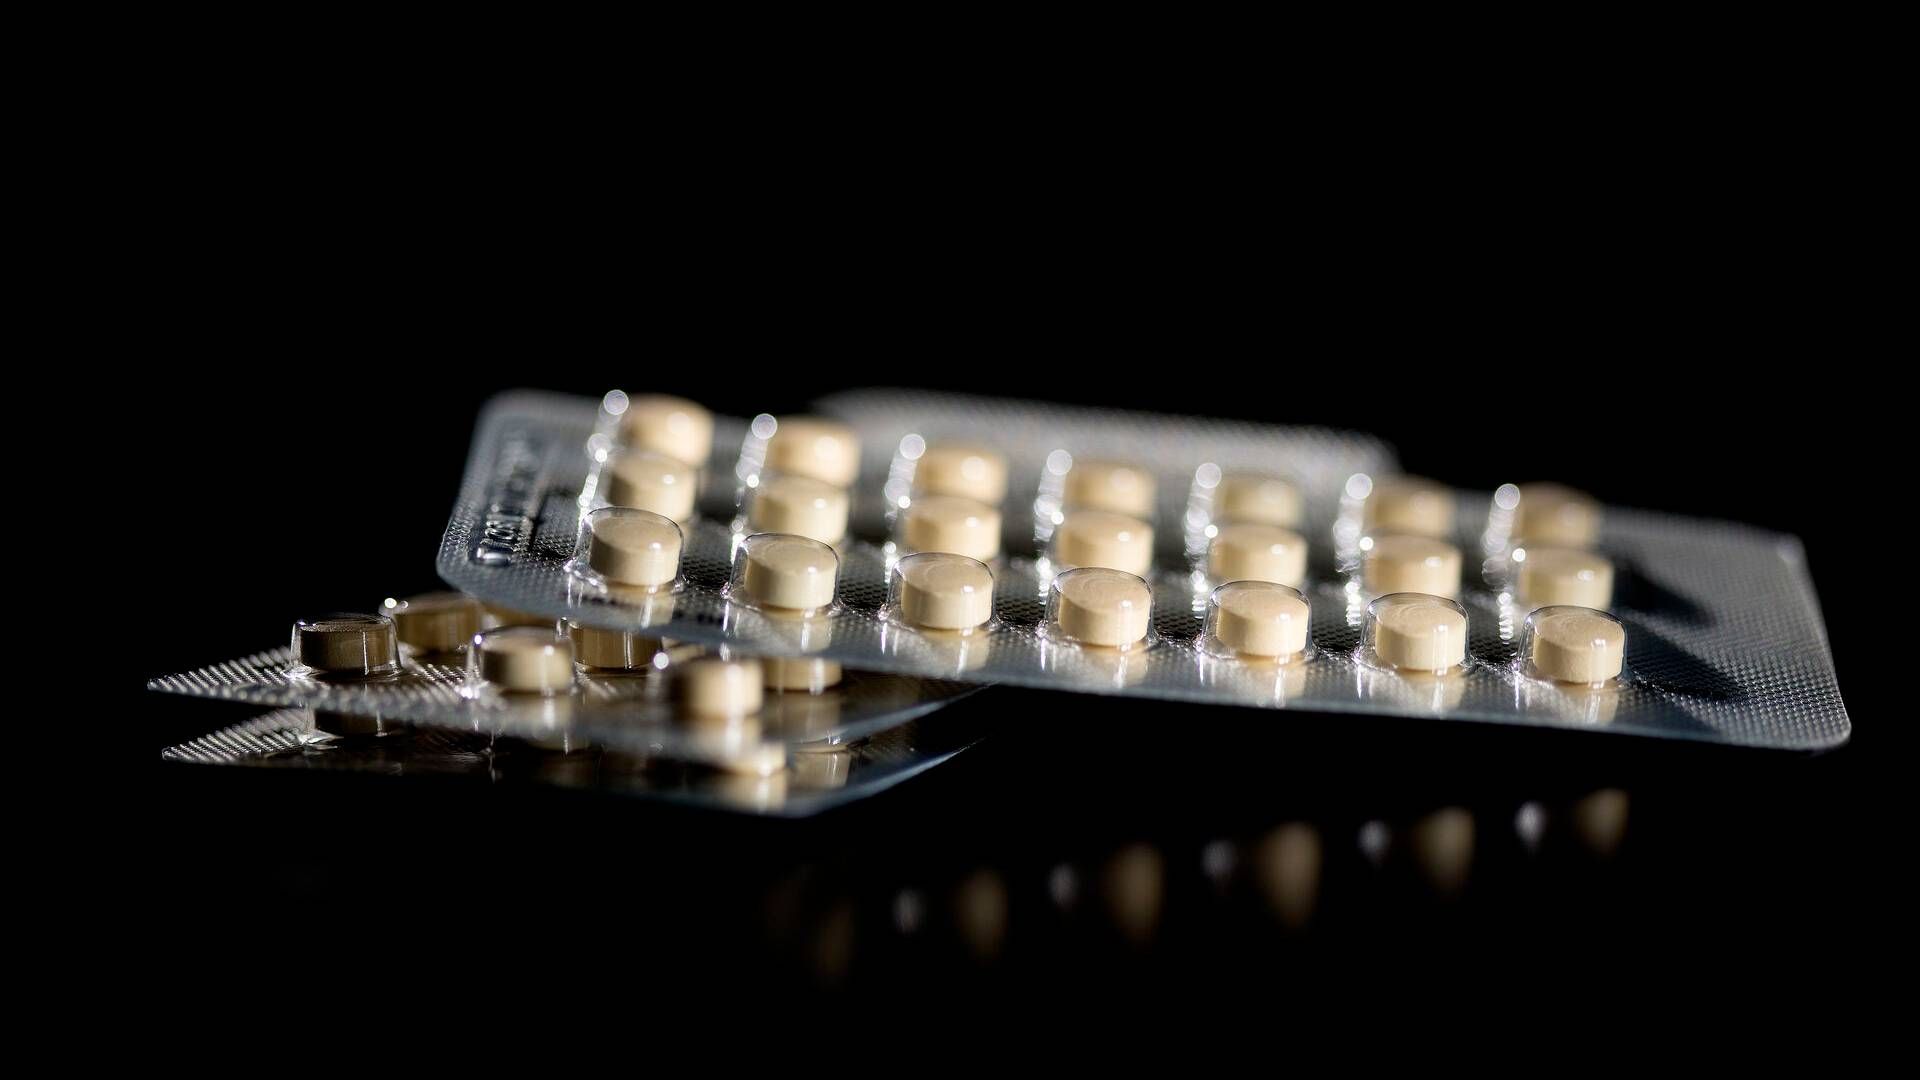 Studiet skal undersøge hormonel prævention som p-piller, p-plaster og hormonspiral. | Foto: Peter Hove Olesen/politiken/ritzau Scanpix